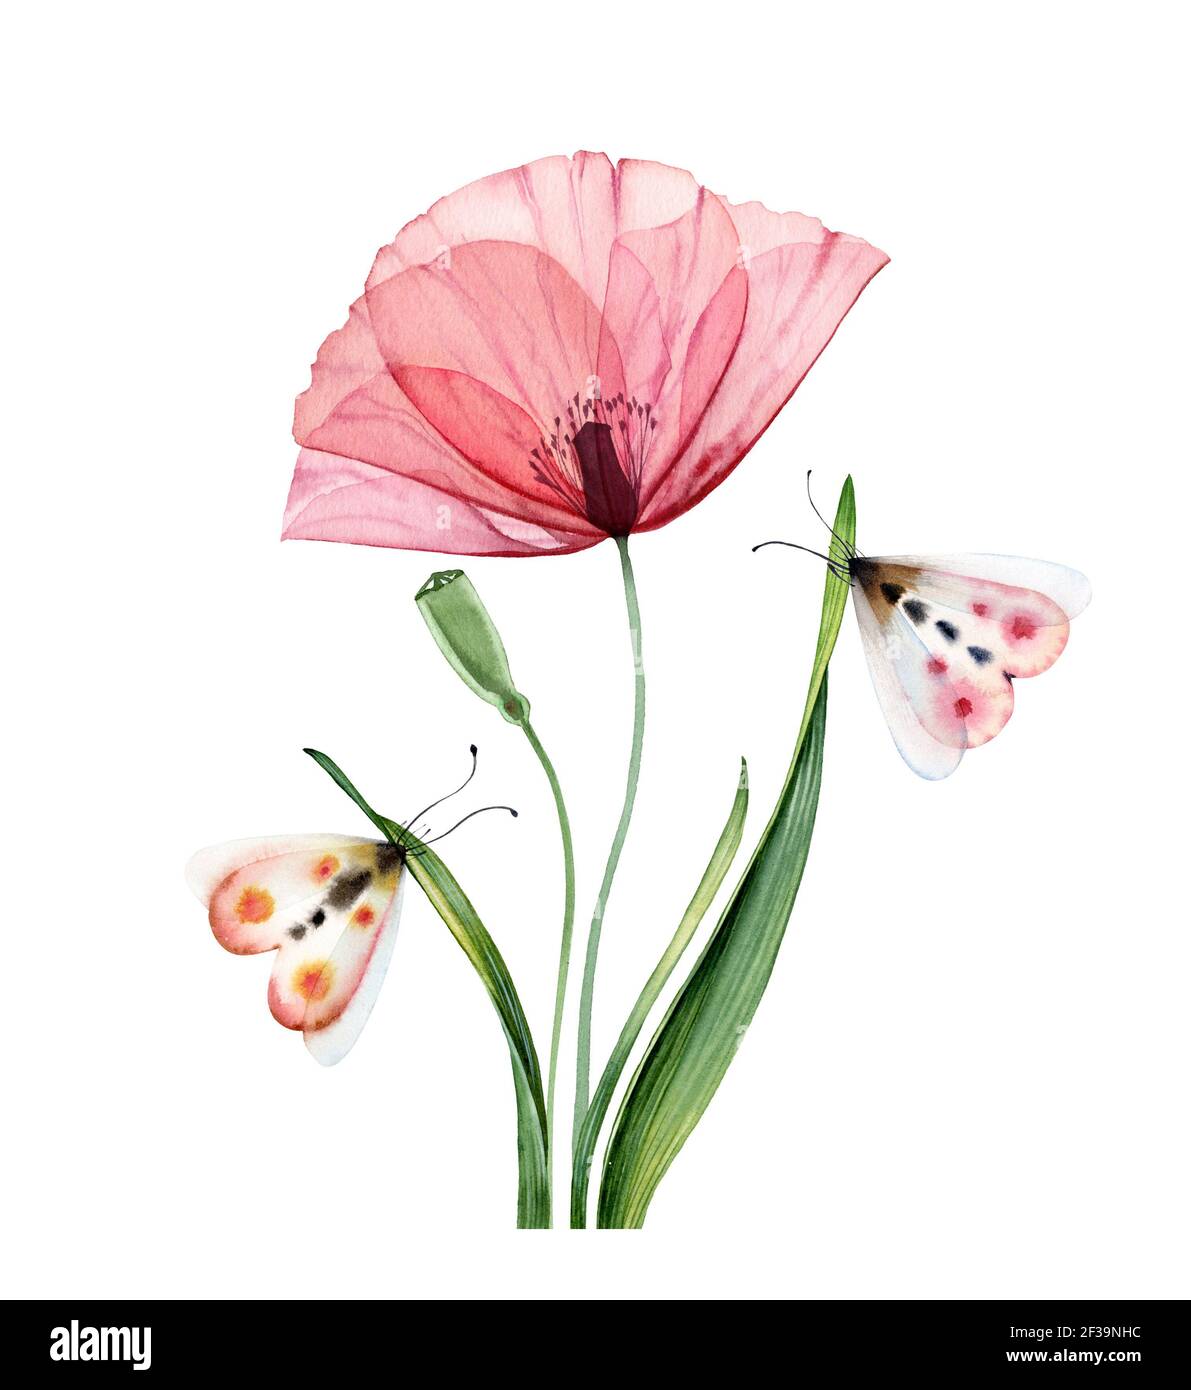 Aquarell Mohn Pflanze. Große transparente rosa Blume mit Broten und Schmetterlingen. Handgemalte abstrakte Kunstwerke. Botanische Illustration mit bunten Stockfoto